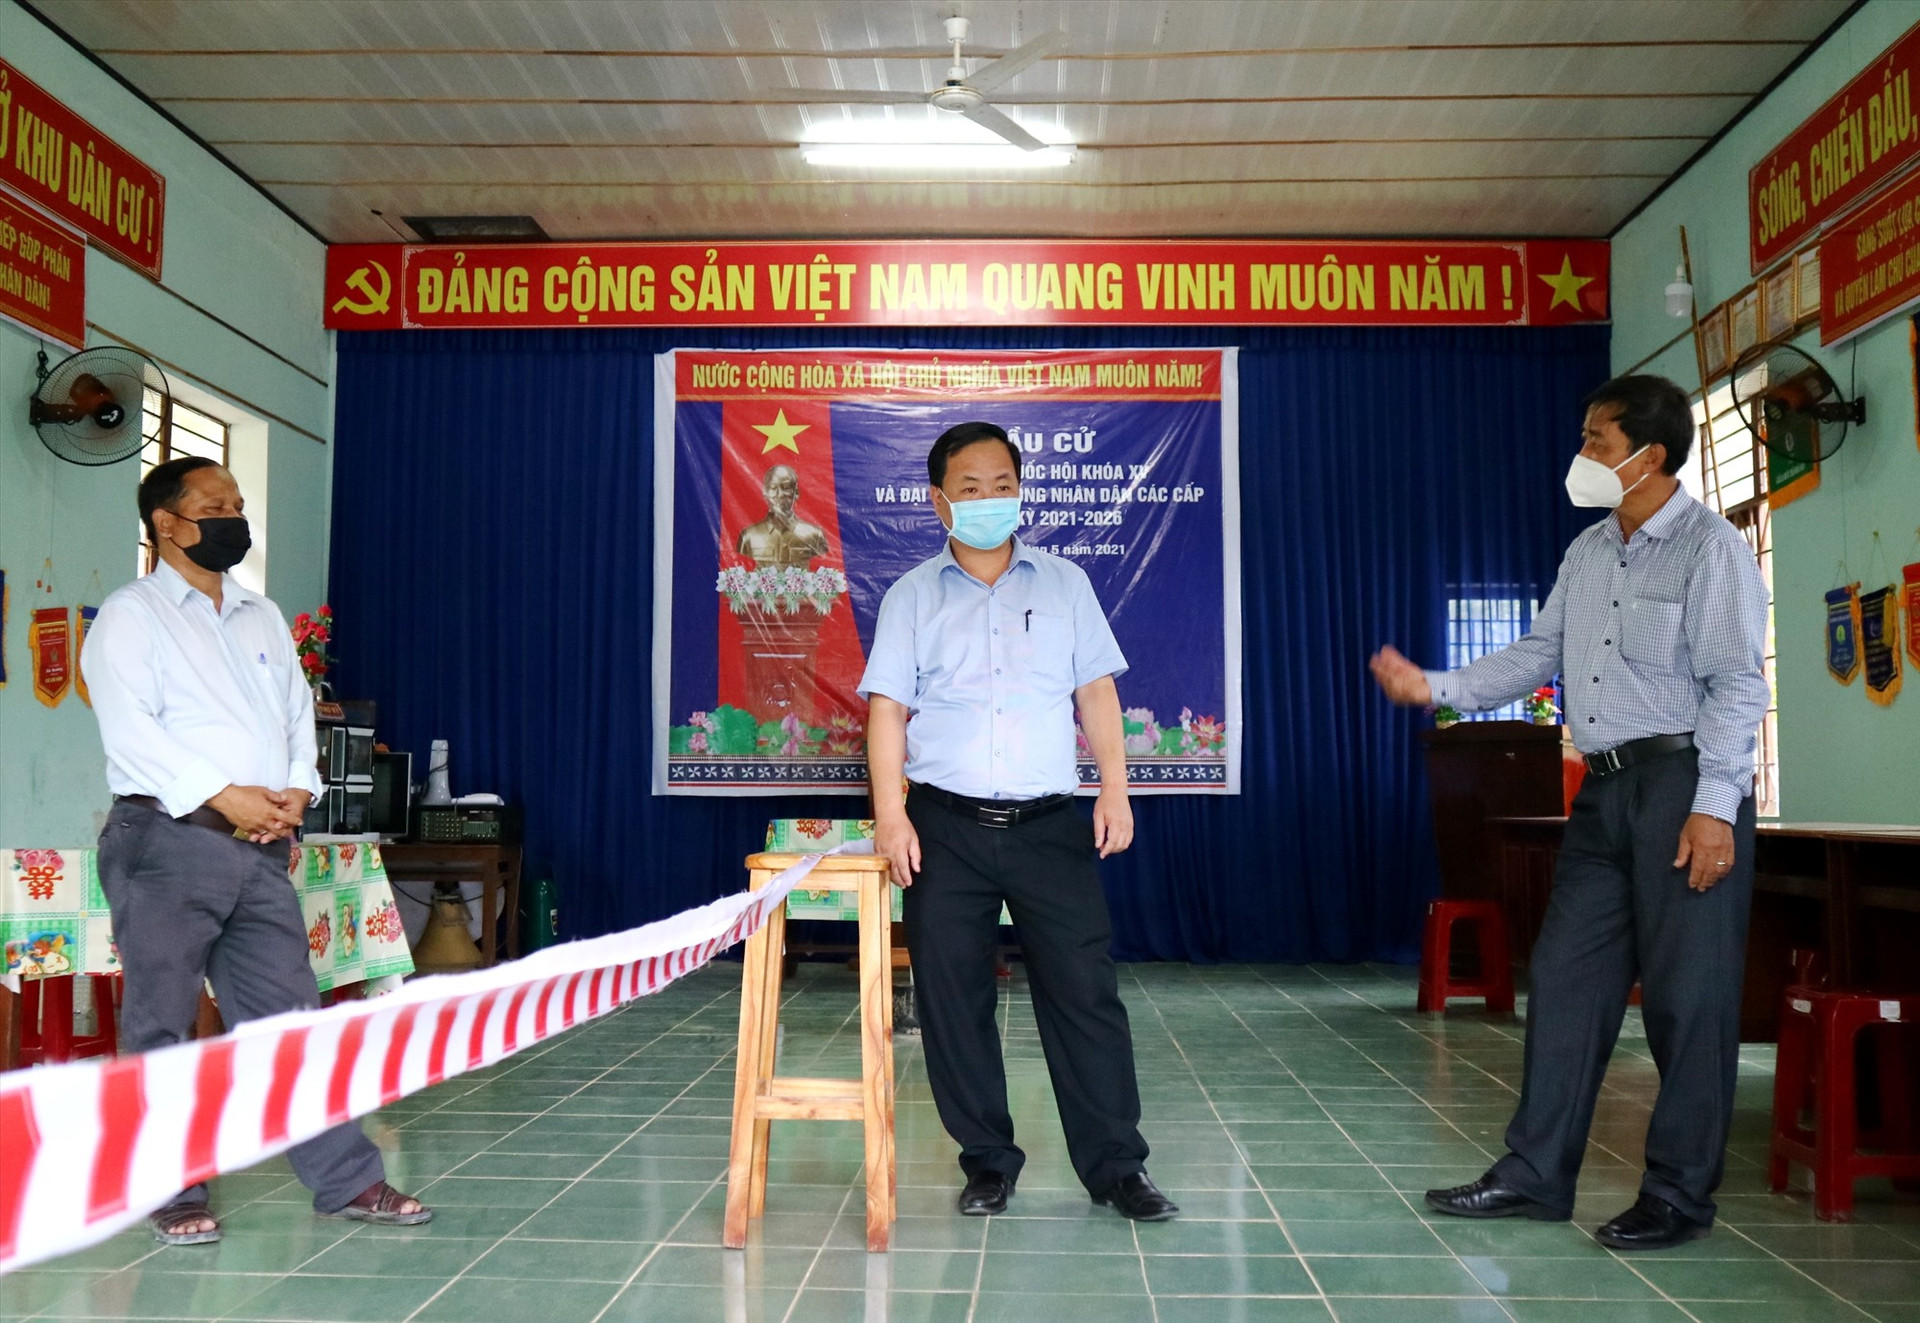 Phó Chủ tịch UBND tỉnh Nguyễn Hồng Quang kiểm tra thực tế một điểm bầu cử được địa phương chuẩn bị tại thị trấn P'rao. Ảnh: A.N